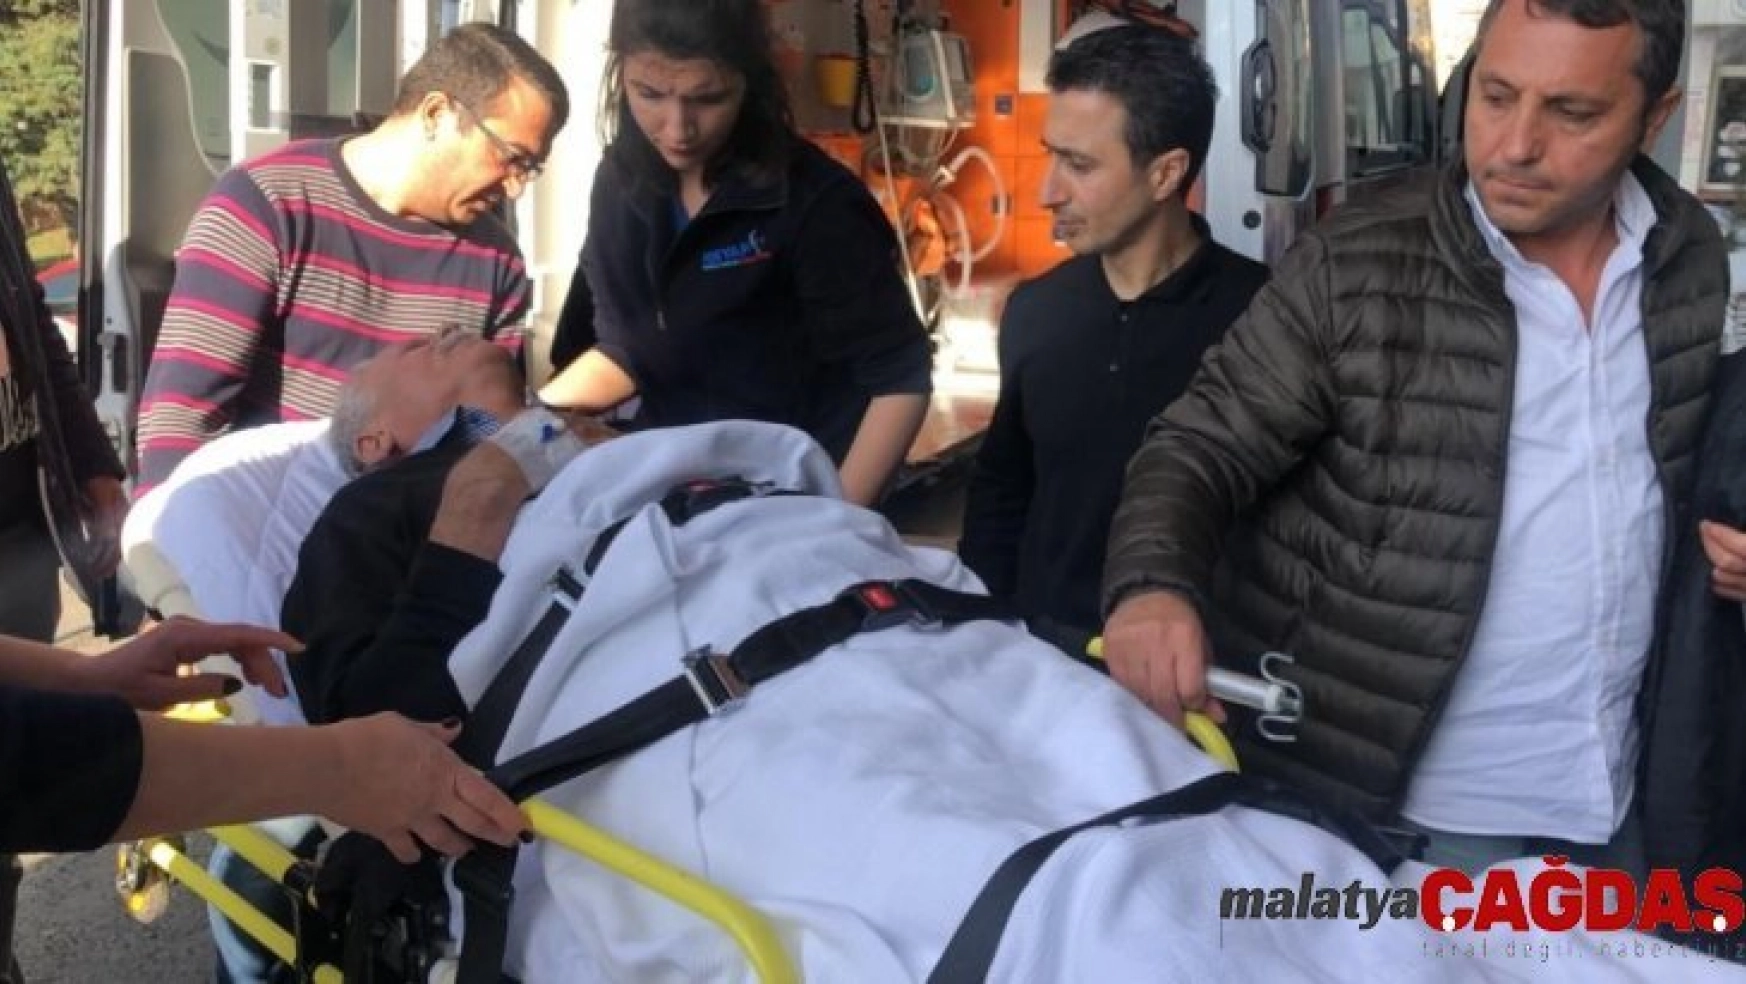 Selahattin Demirtaş'ın ailesi kaza geçirdi